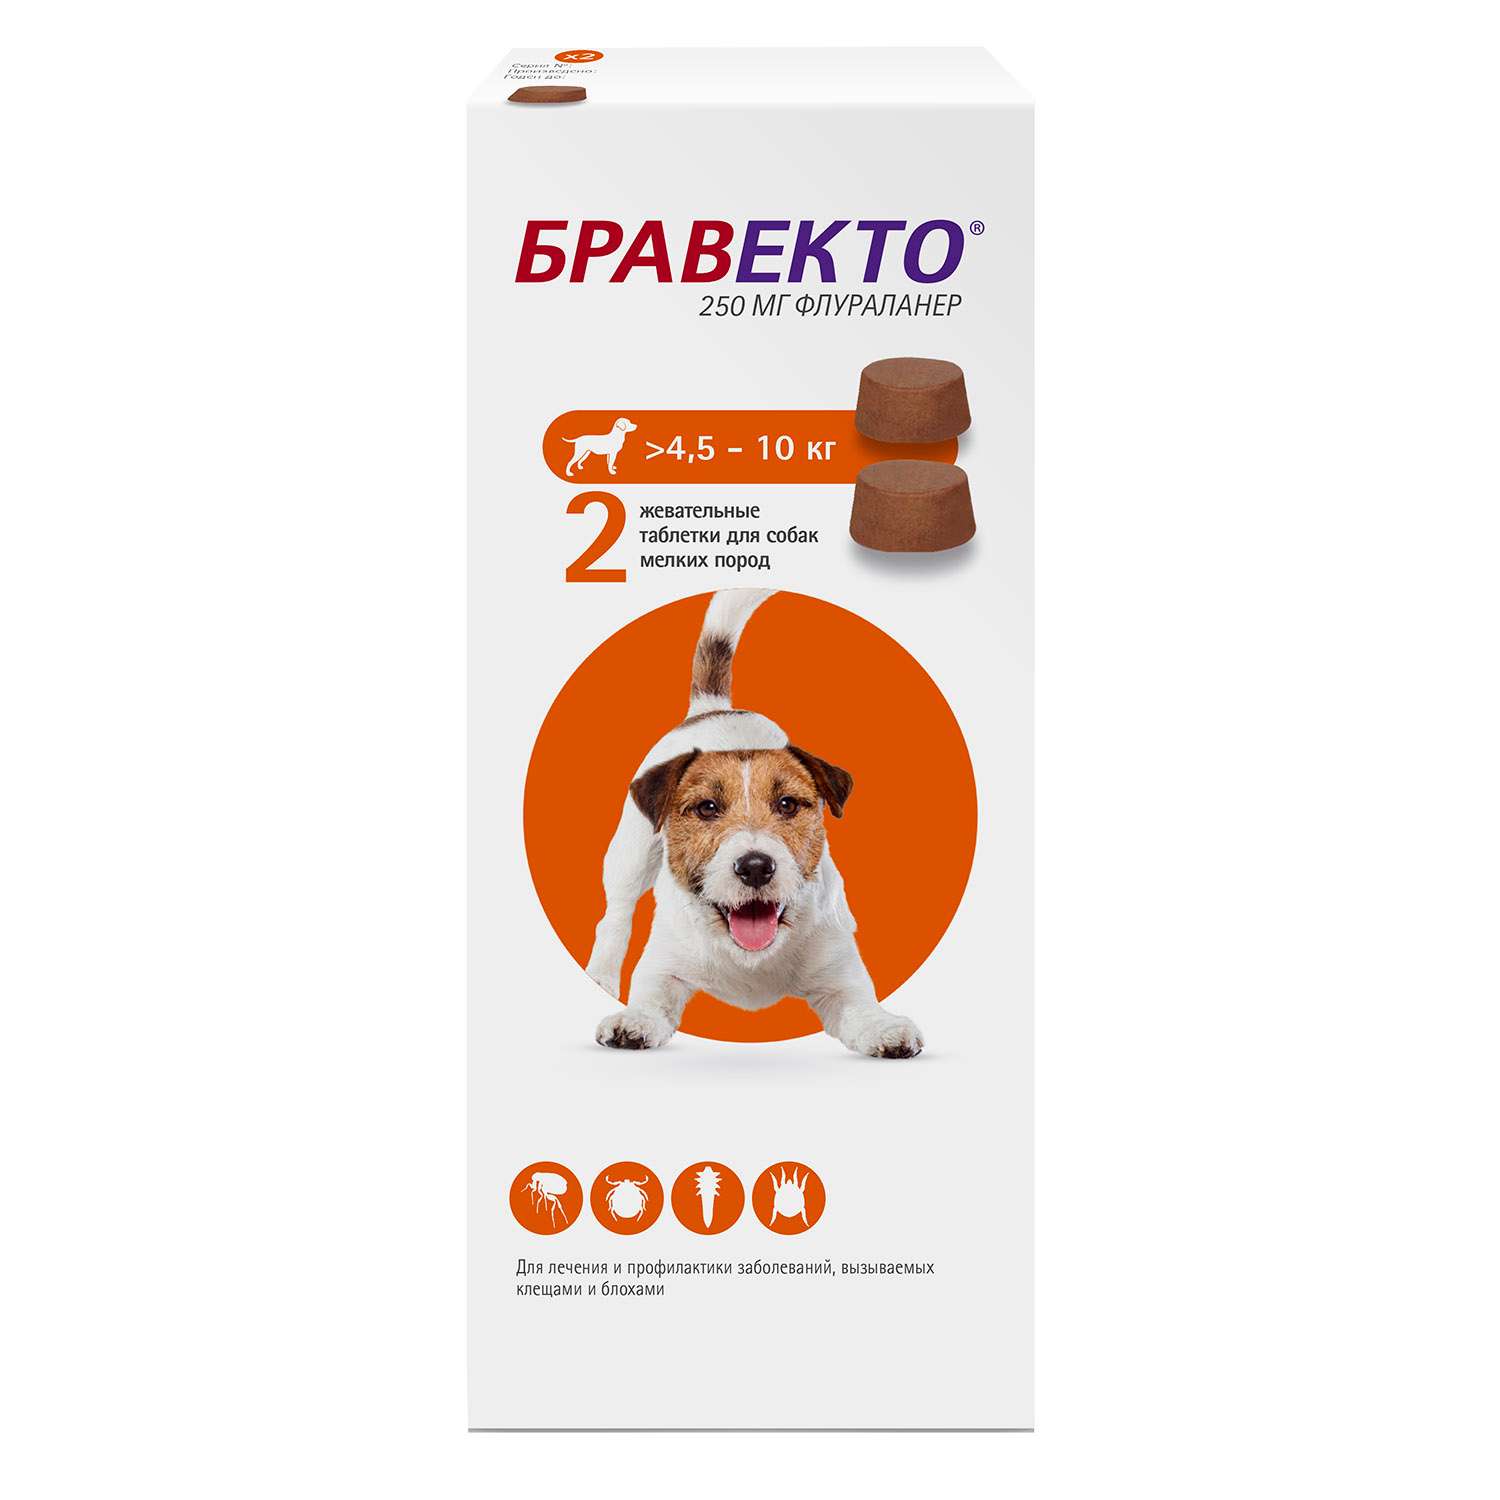 Бравекто для собак купить 4 5 кг. Бравекто для собак до 10 кг таблетки. Бравекто таблетки от 4,5 до 10 кг. Бравекто (MSD animal Health) таблетки от блох и клещей для собак 4,5-10 кг. Бравекто (Bravecto) 4.5- 10.